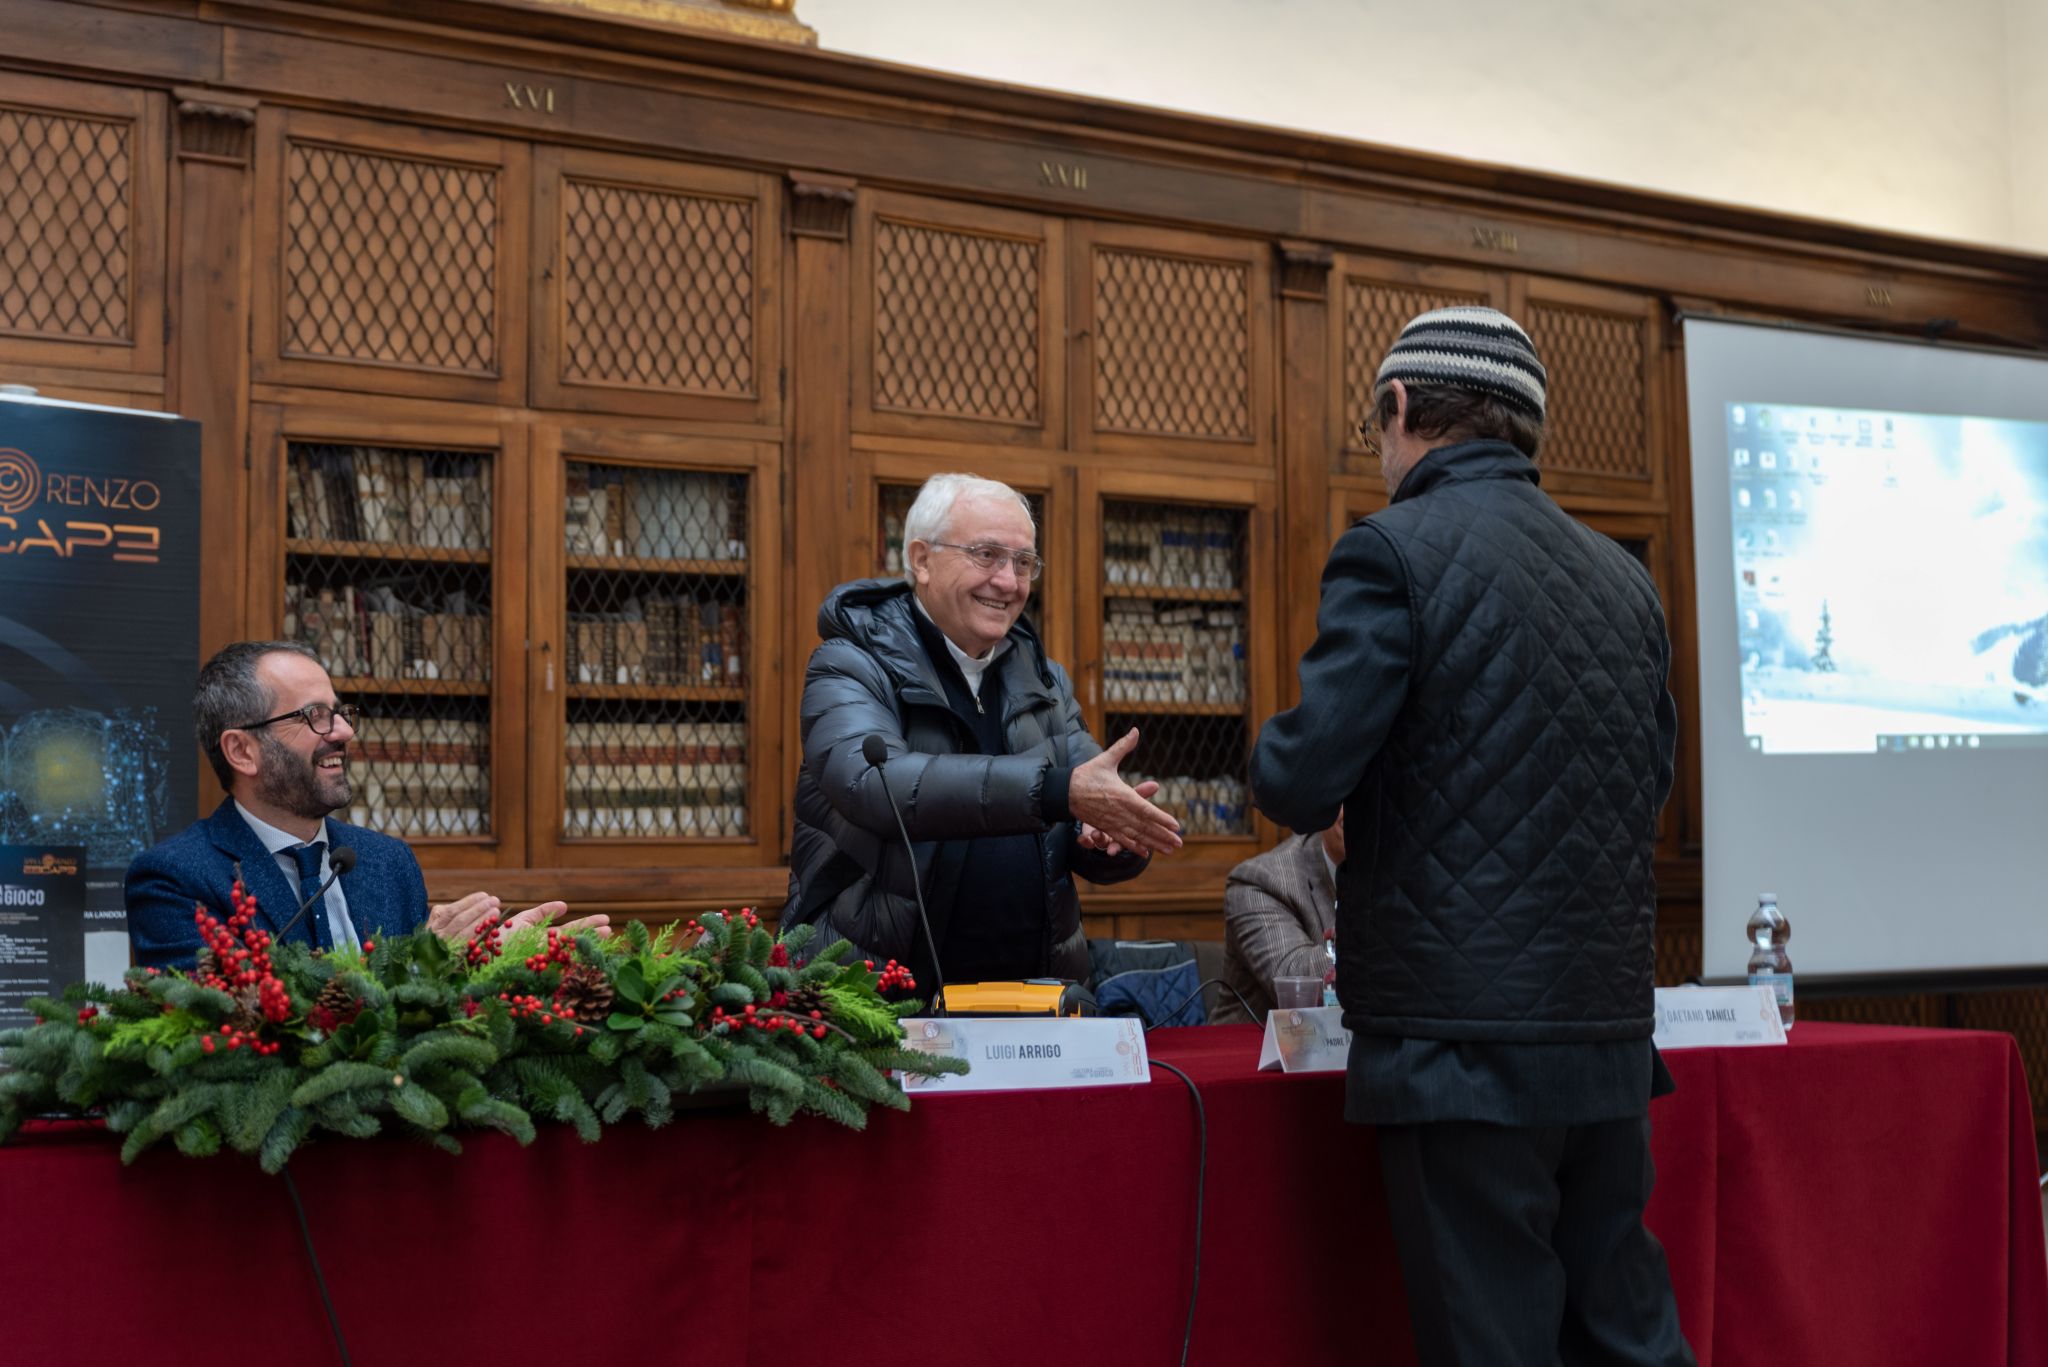 Napoli, un defibrillatore sotto l’albero per il complesso di San Lorenzo Maggiore: il regalo di uno studio legale